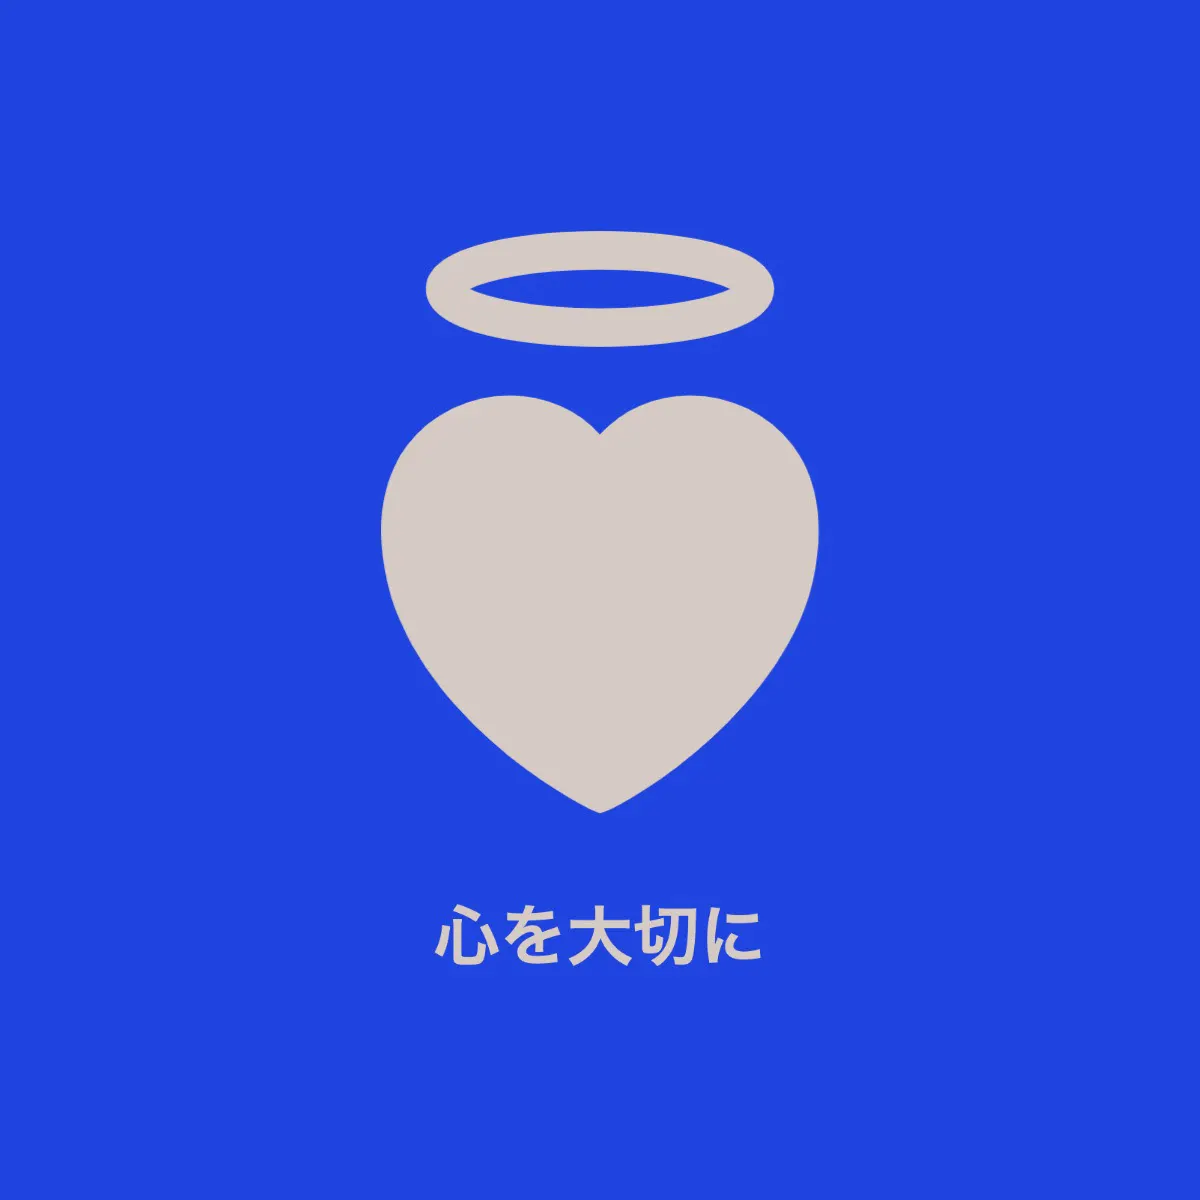 Blue angel heart logo